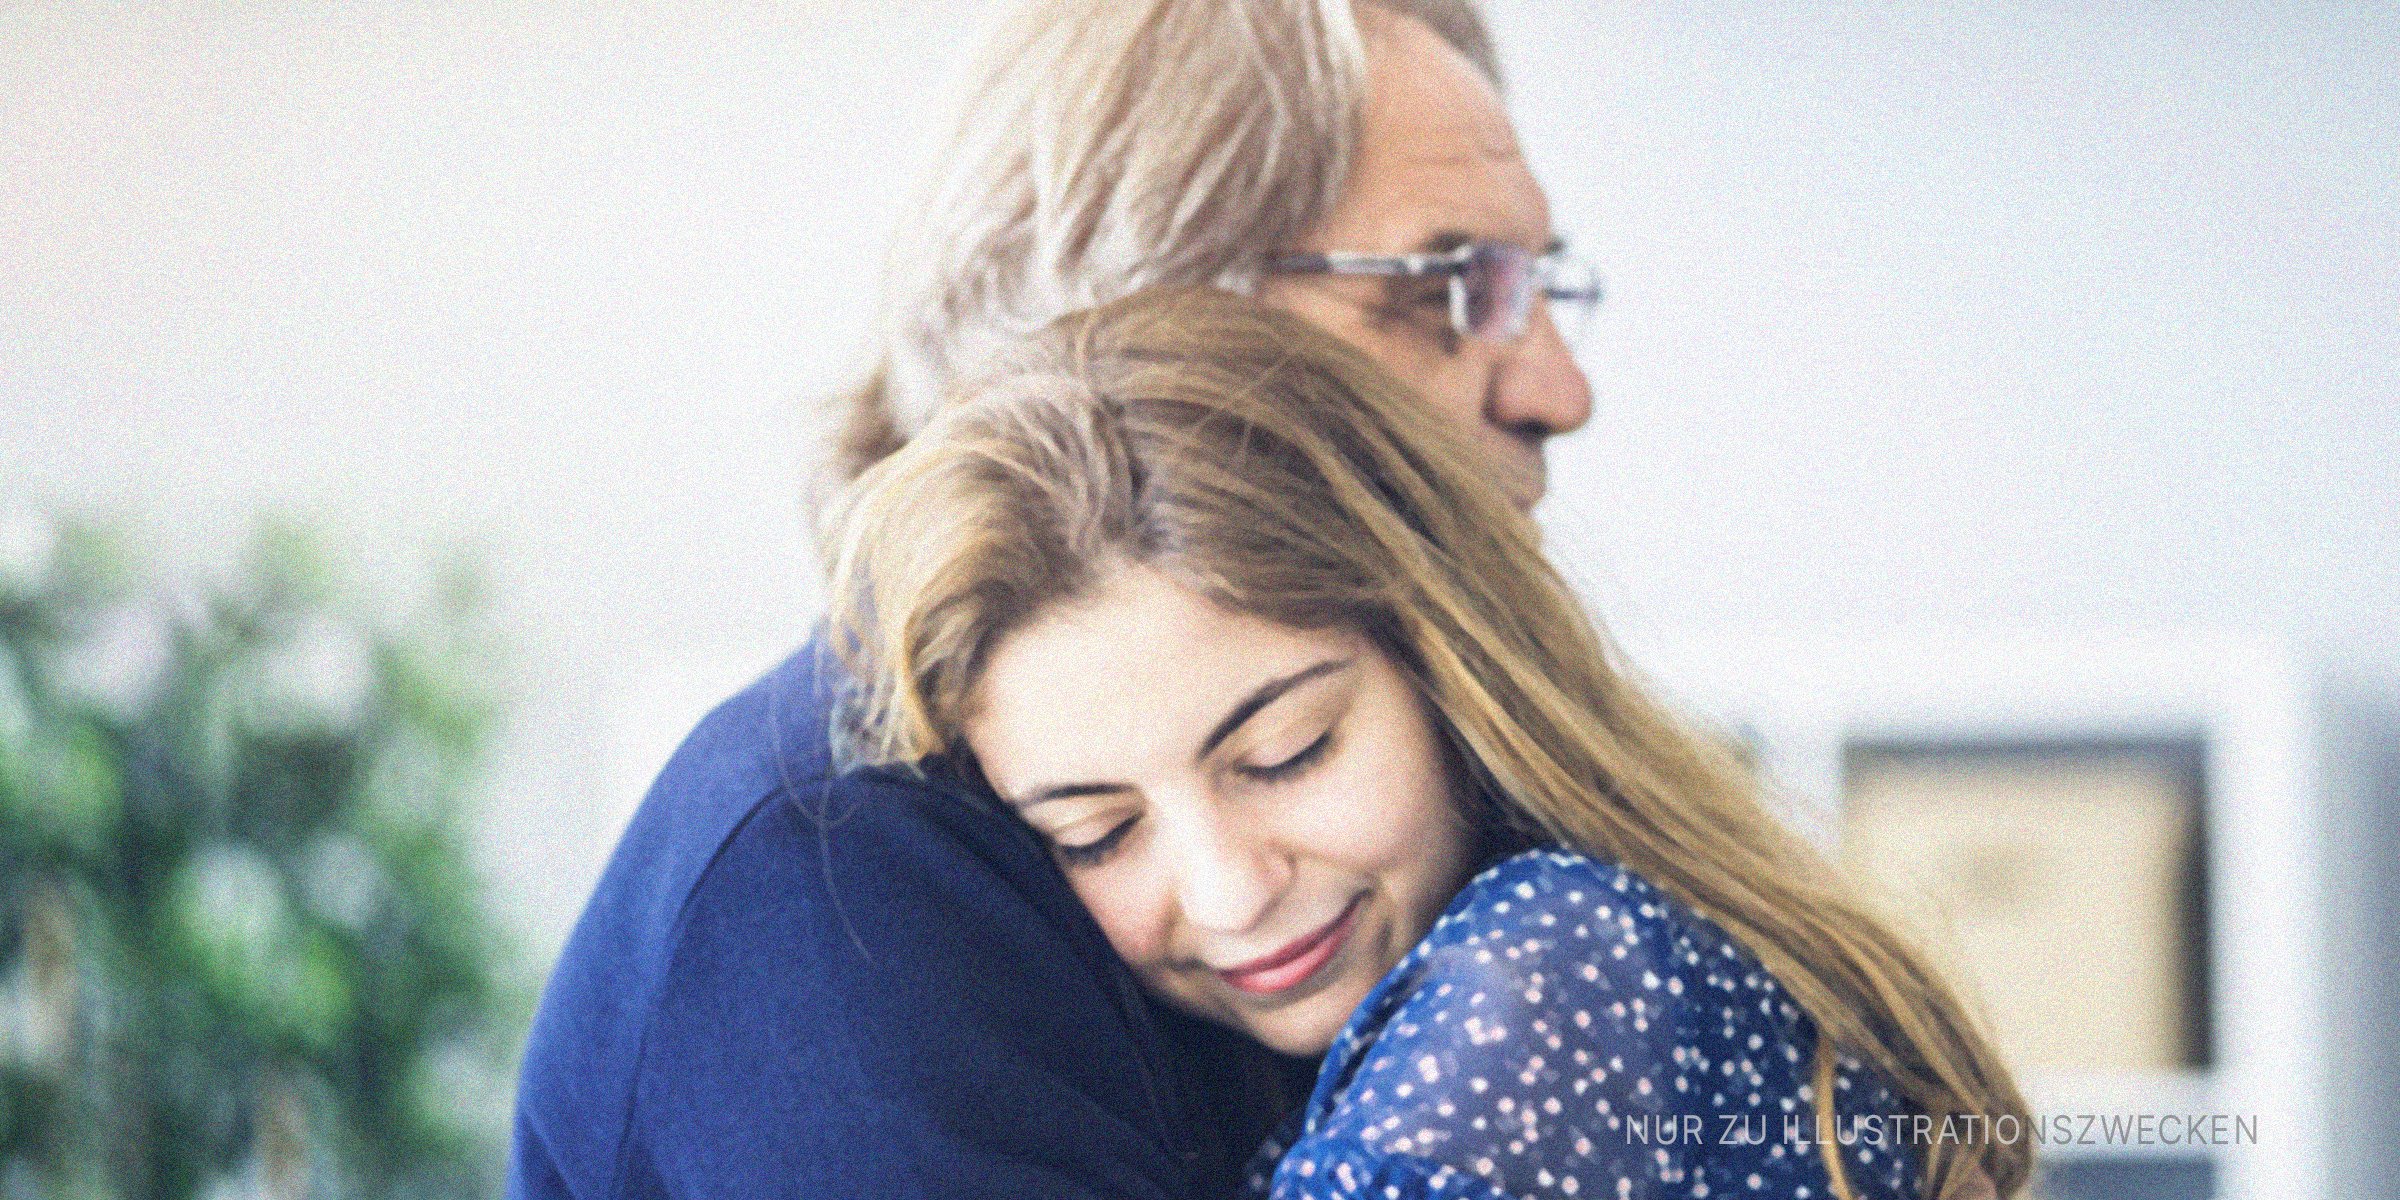 Umarmung von Vater und Tochter | Quelle: Shutterstock